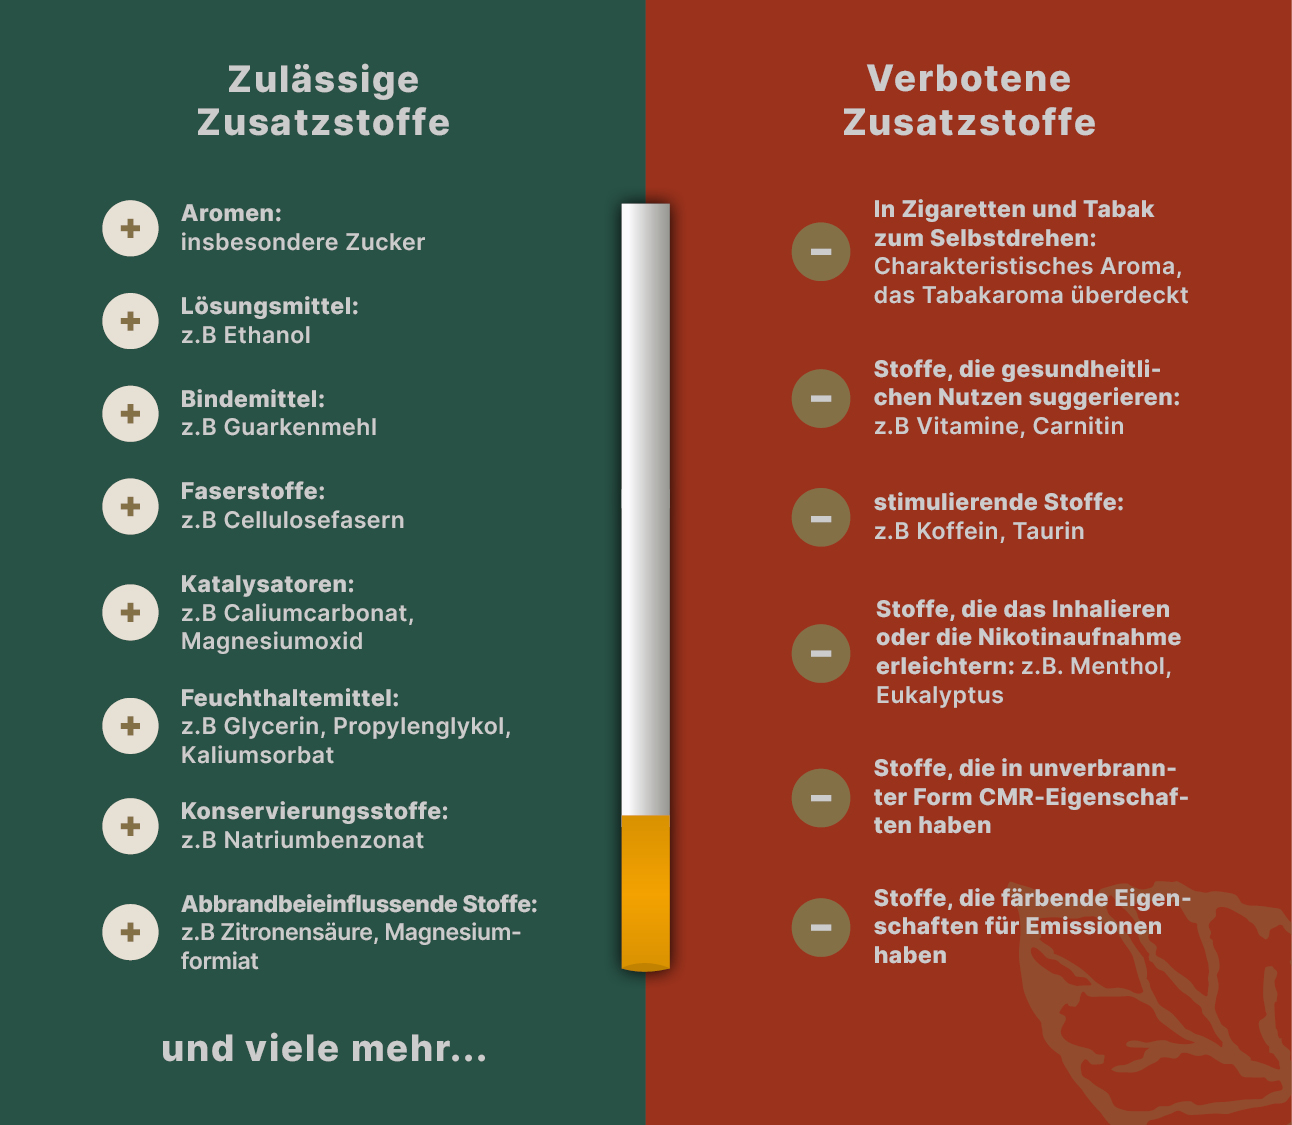 Tabellle: erlaubte und verbotene Zusatzstoffe von Zigaretten